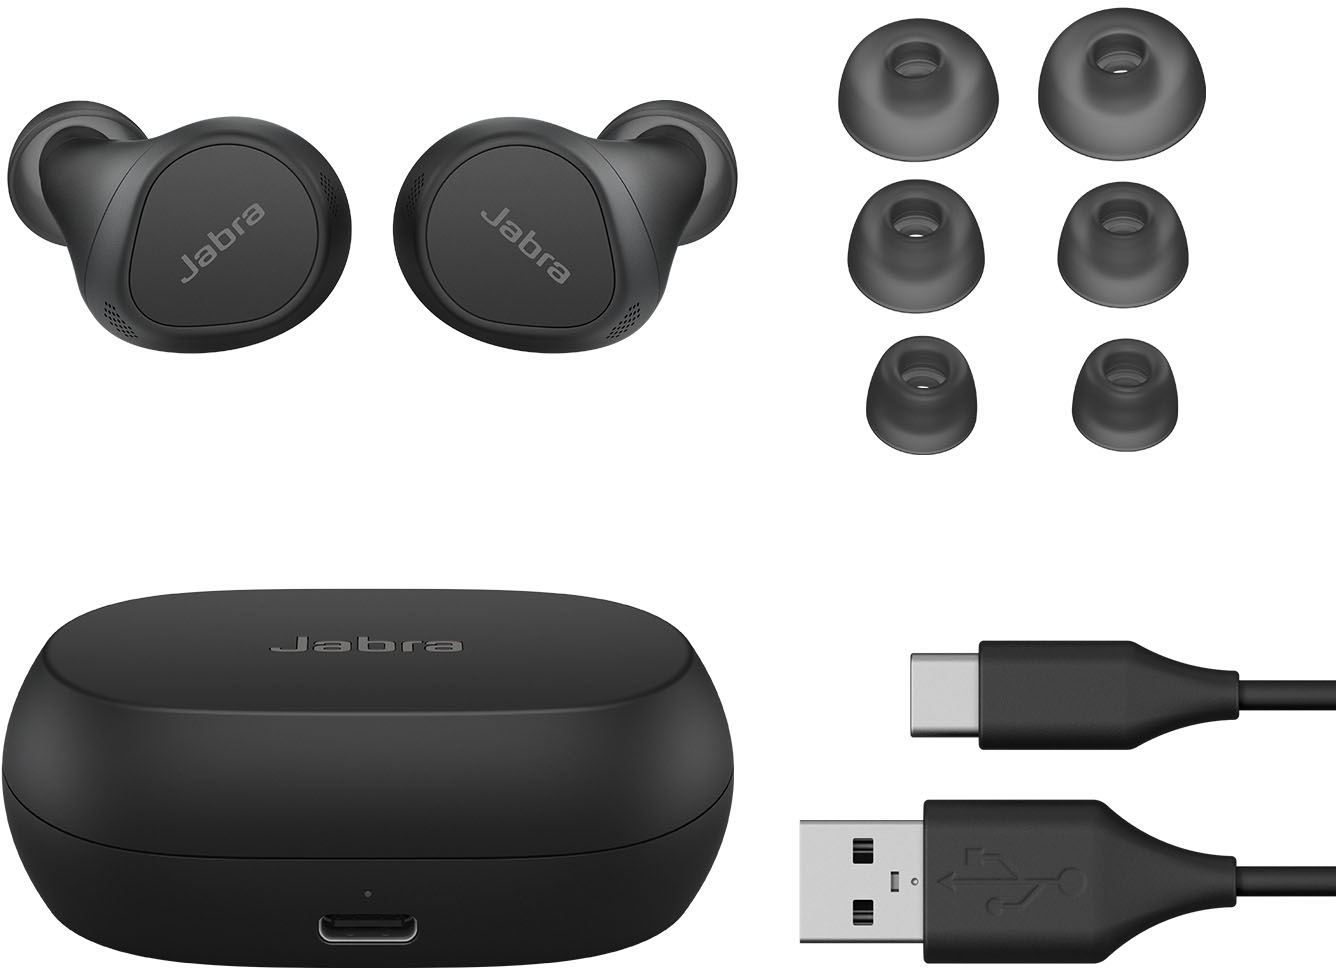 Jabra Elite 7 Pro True Wireless Noise Canceling In-Ear Headphones - Black  for sale online